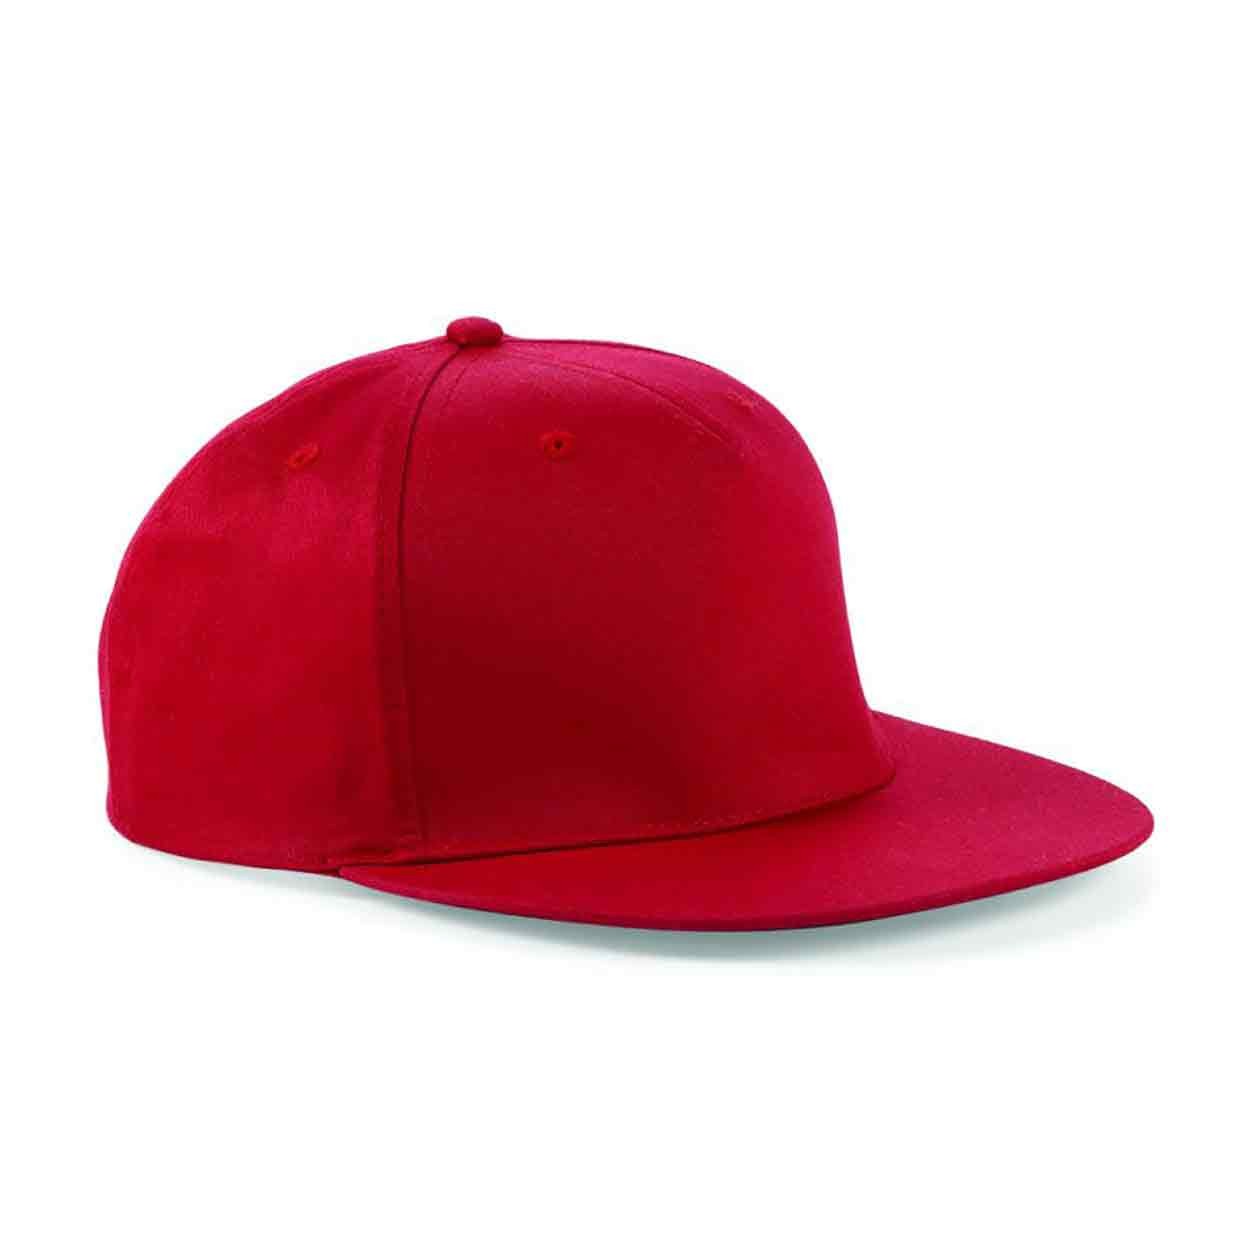 Beechfield BB610 Cotton Rapper Cap - Baseball Caps - Hats & Caps -  Leisurewear - Best Workwear